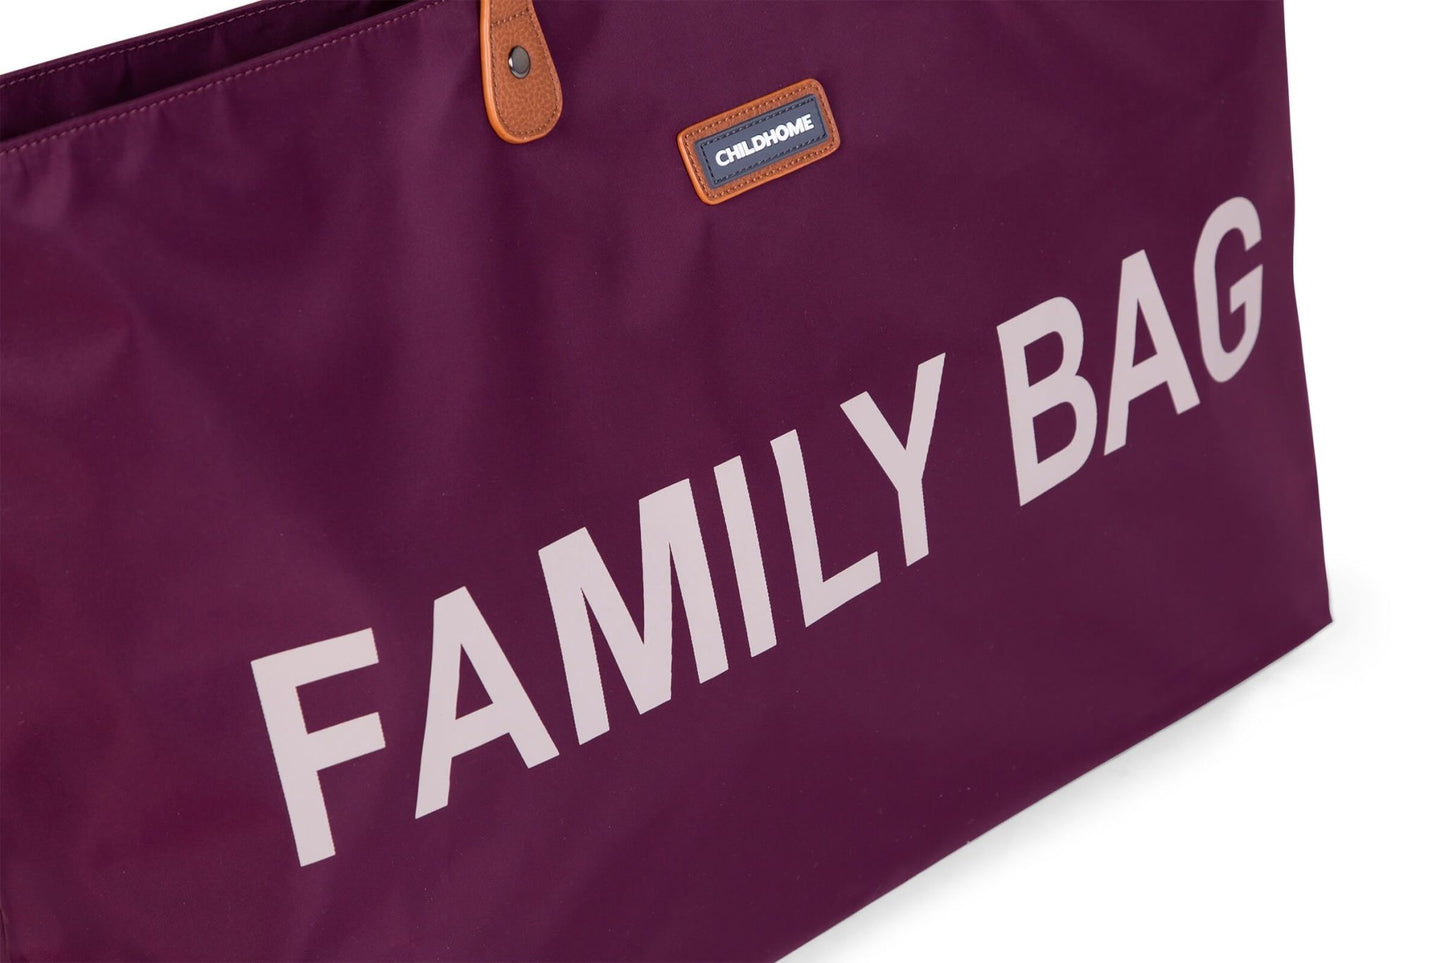 Family Bag Verzorgingstas - Aubergine